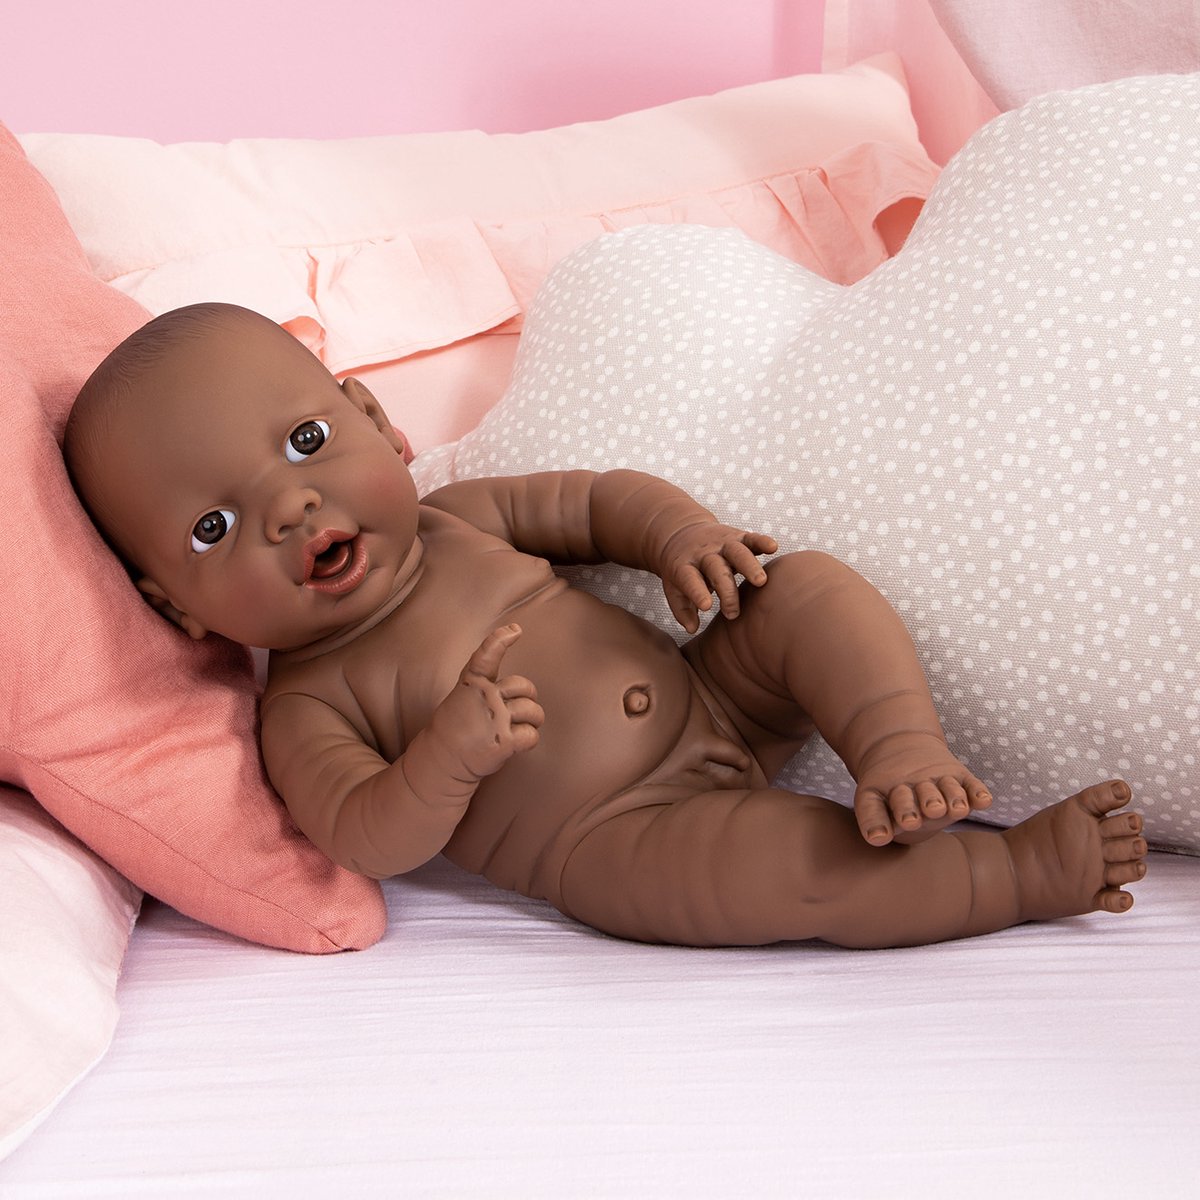 Bayer babypop Newborn Black Boy 42 cm - Bruin